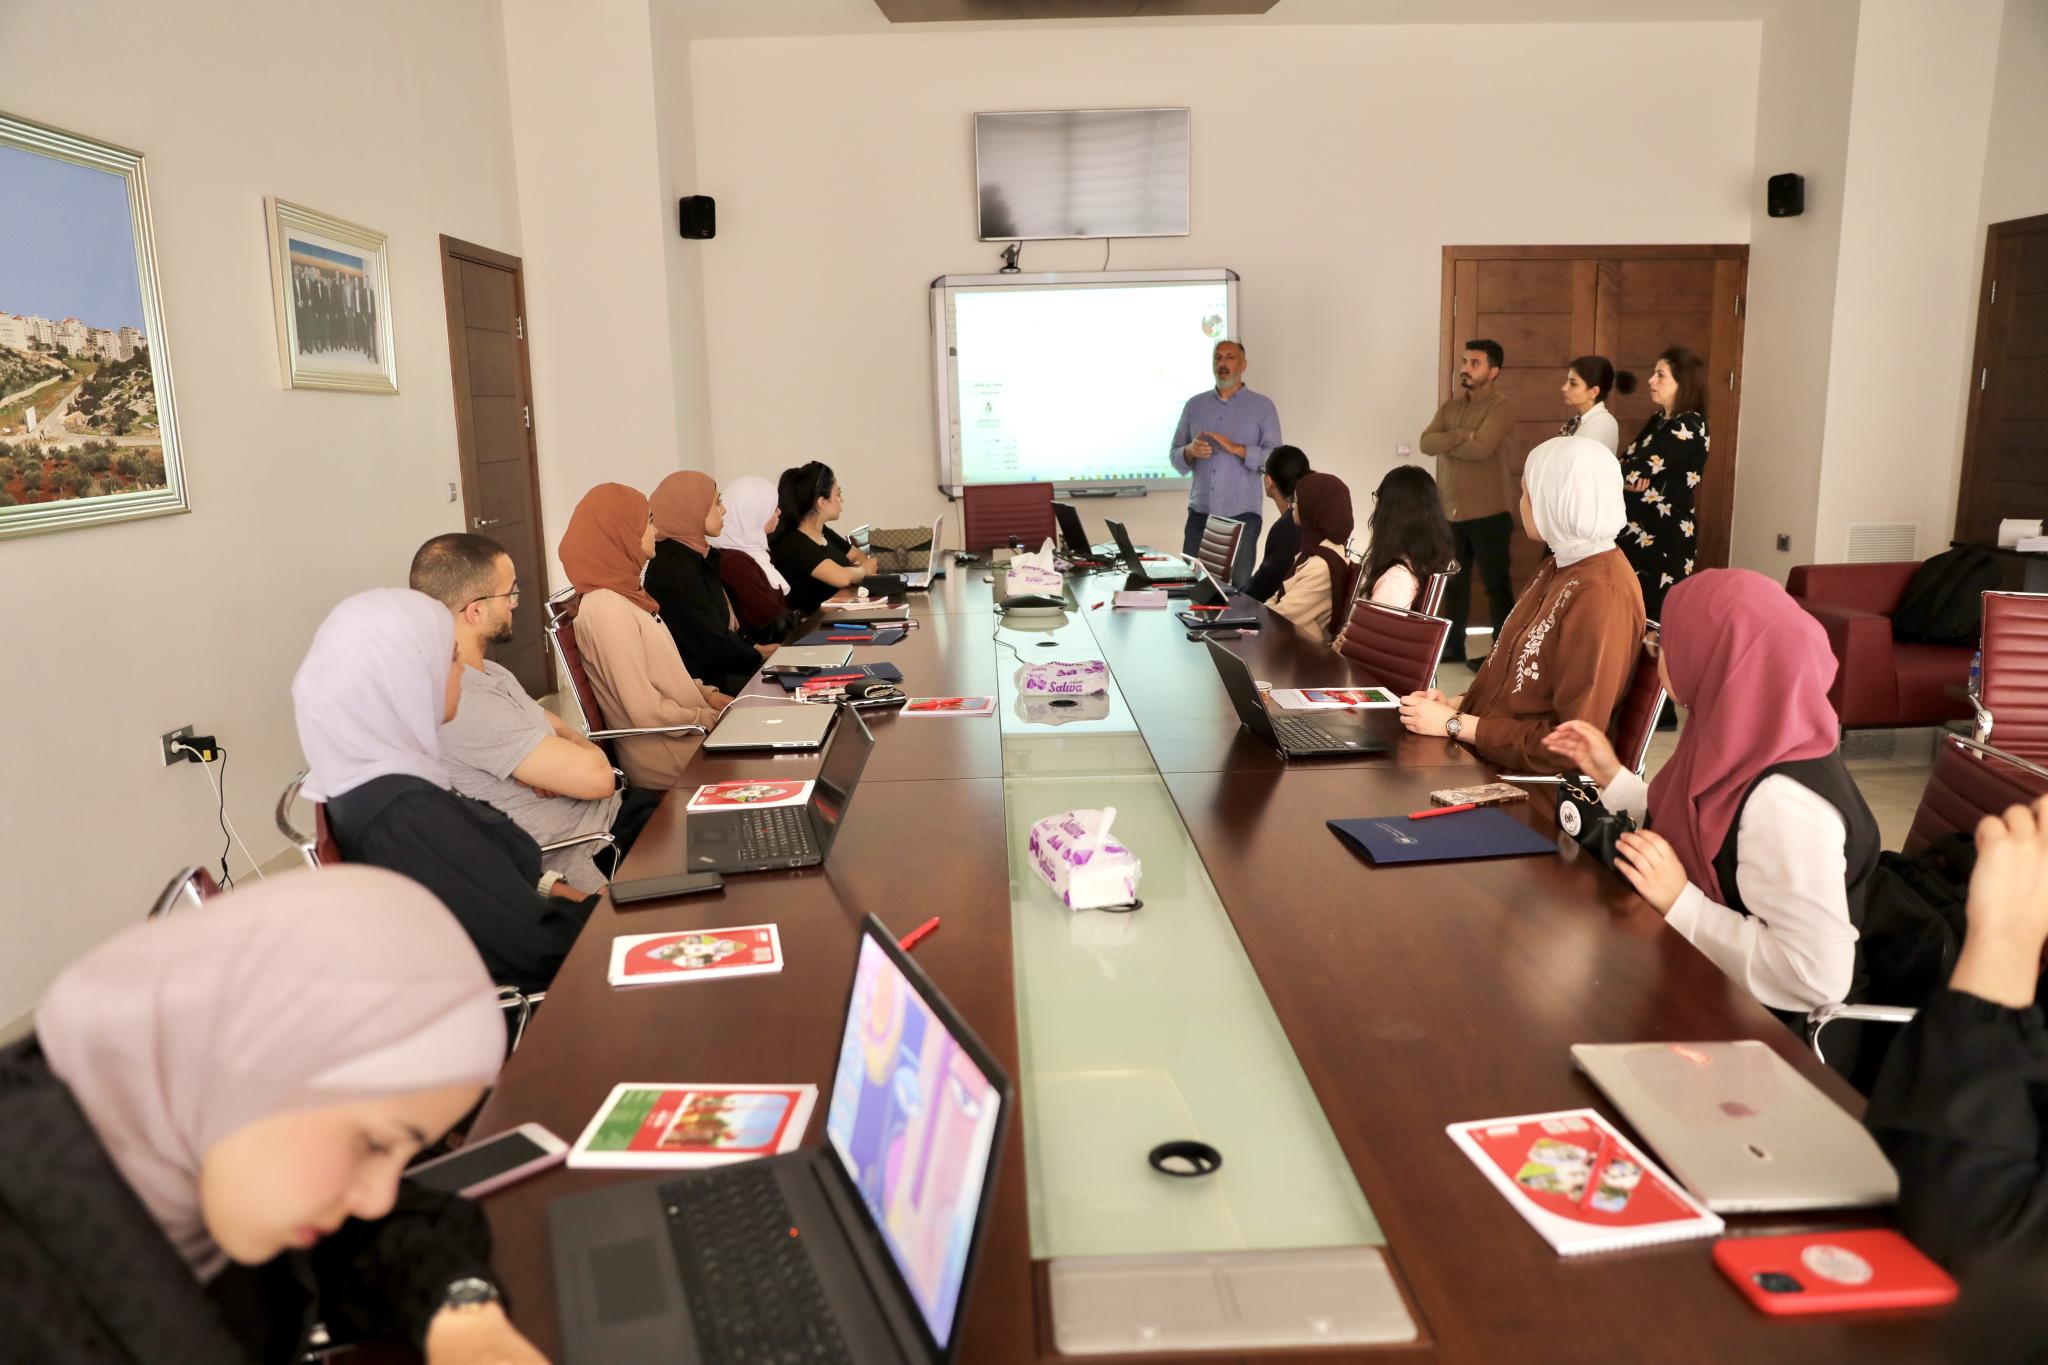 دائرة المكتبة والأرشيف في حرم الجامعة برام الله تنظم دورة تدريبية ضمن مشروع تعزيز ونشر الرواية الفلسطينية